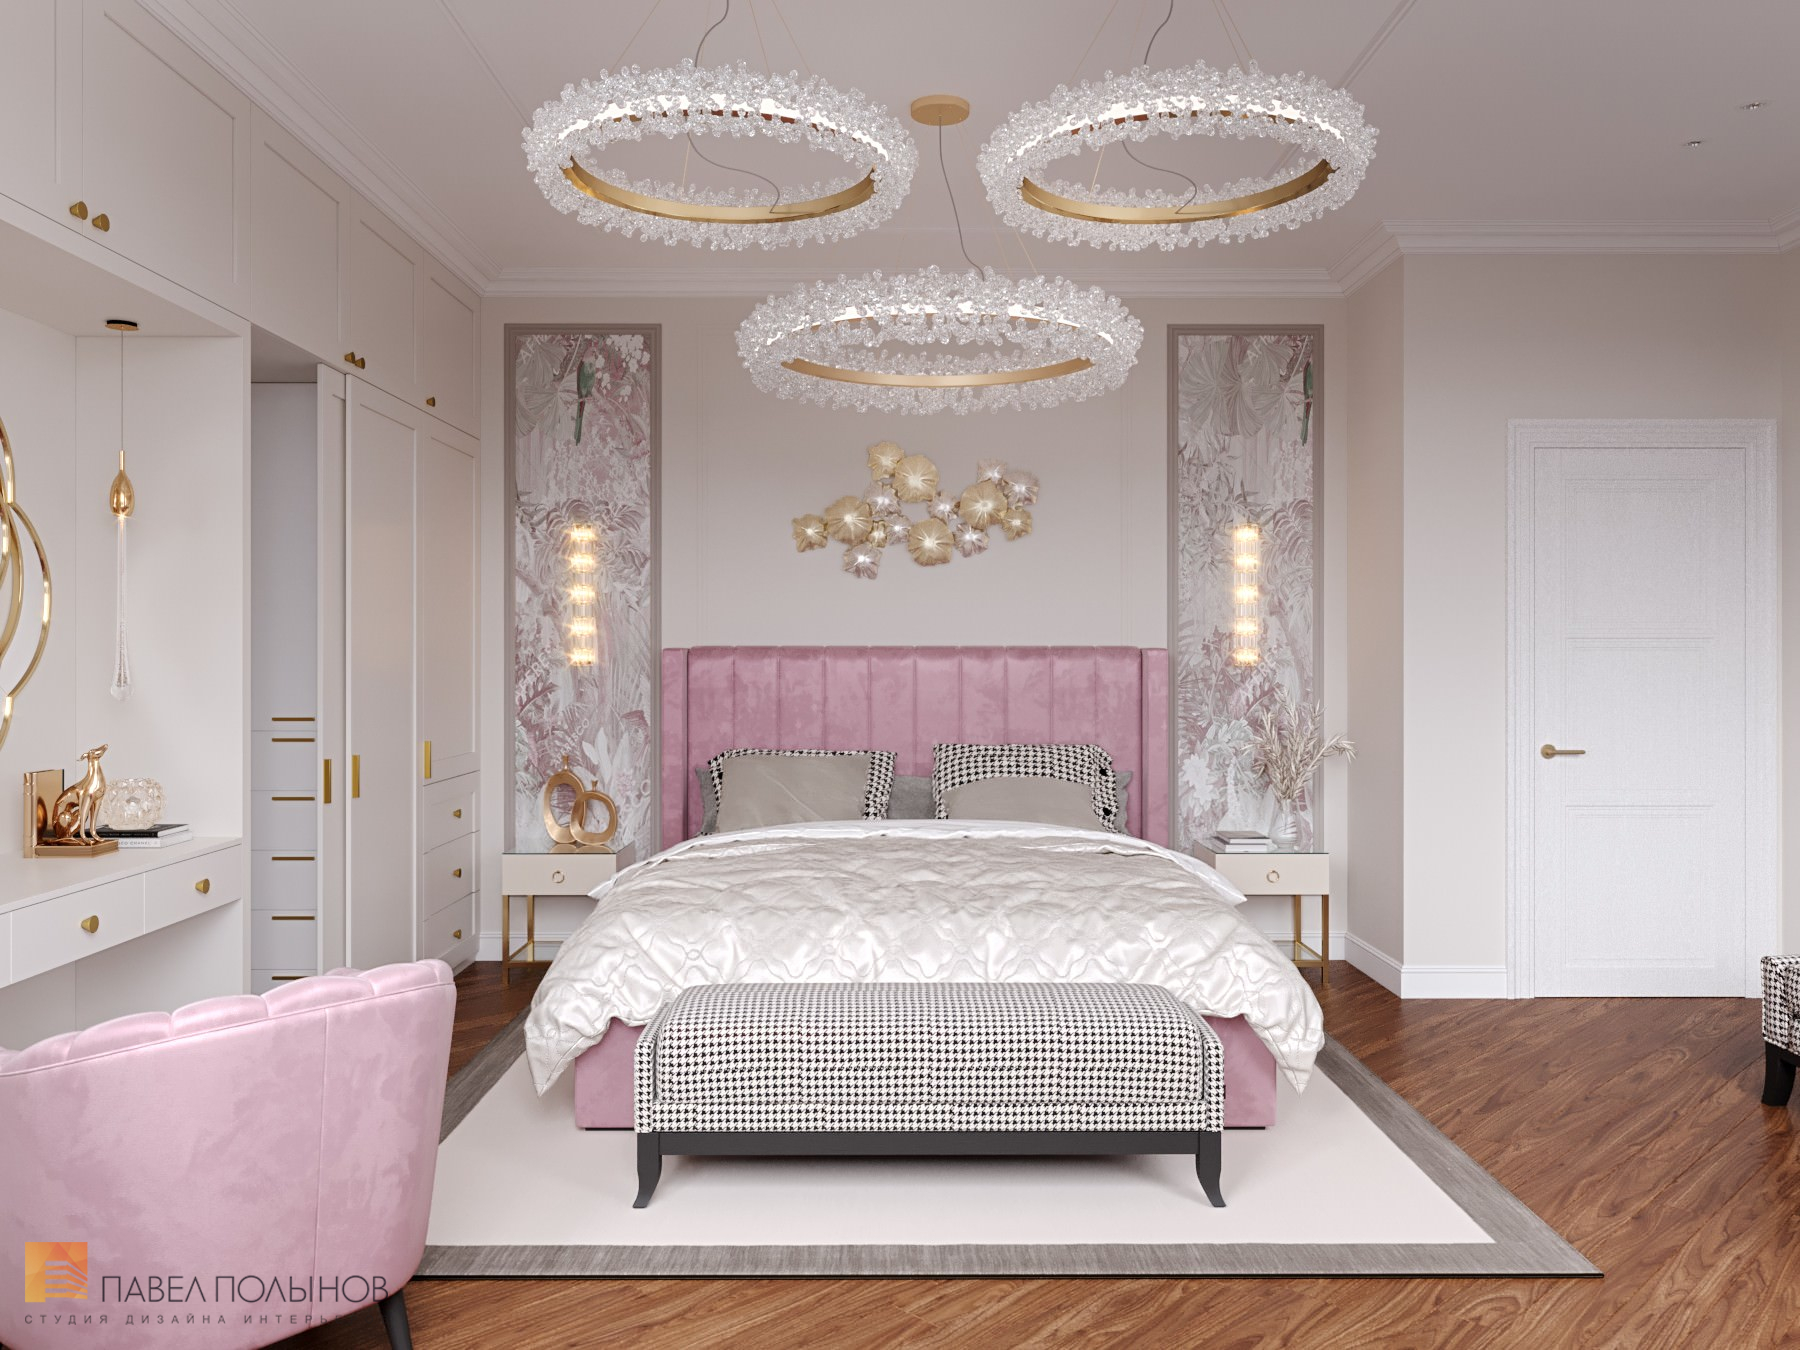 Фото дизайн интерьера спальни из проекта «Интерьер квартиры в классическом стиле с элементами ар-деко, ЖК «Жемчужный берег», 128 кв.м.»